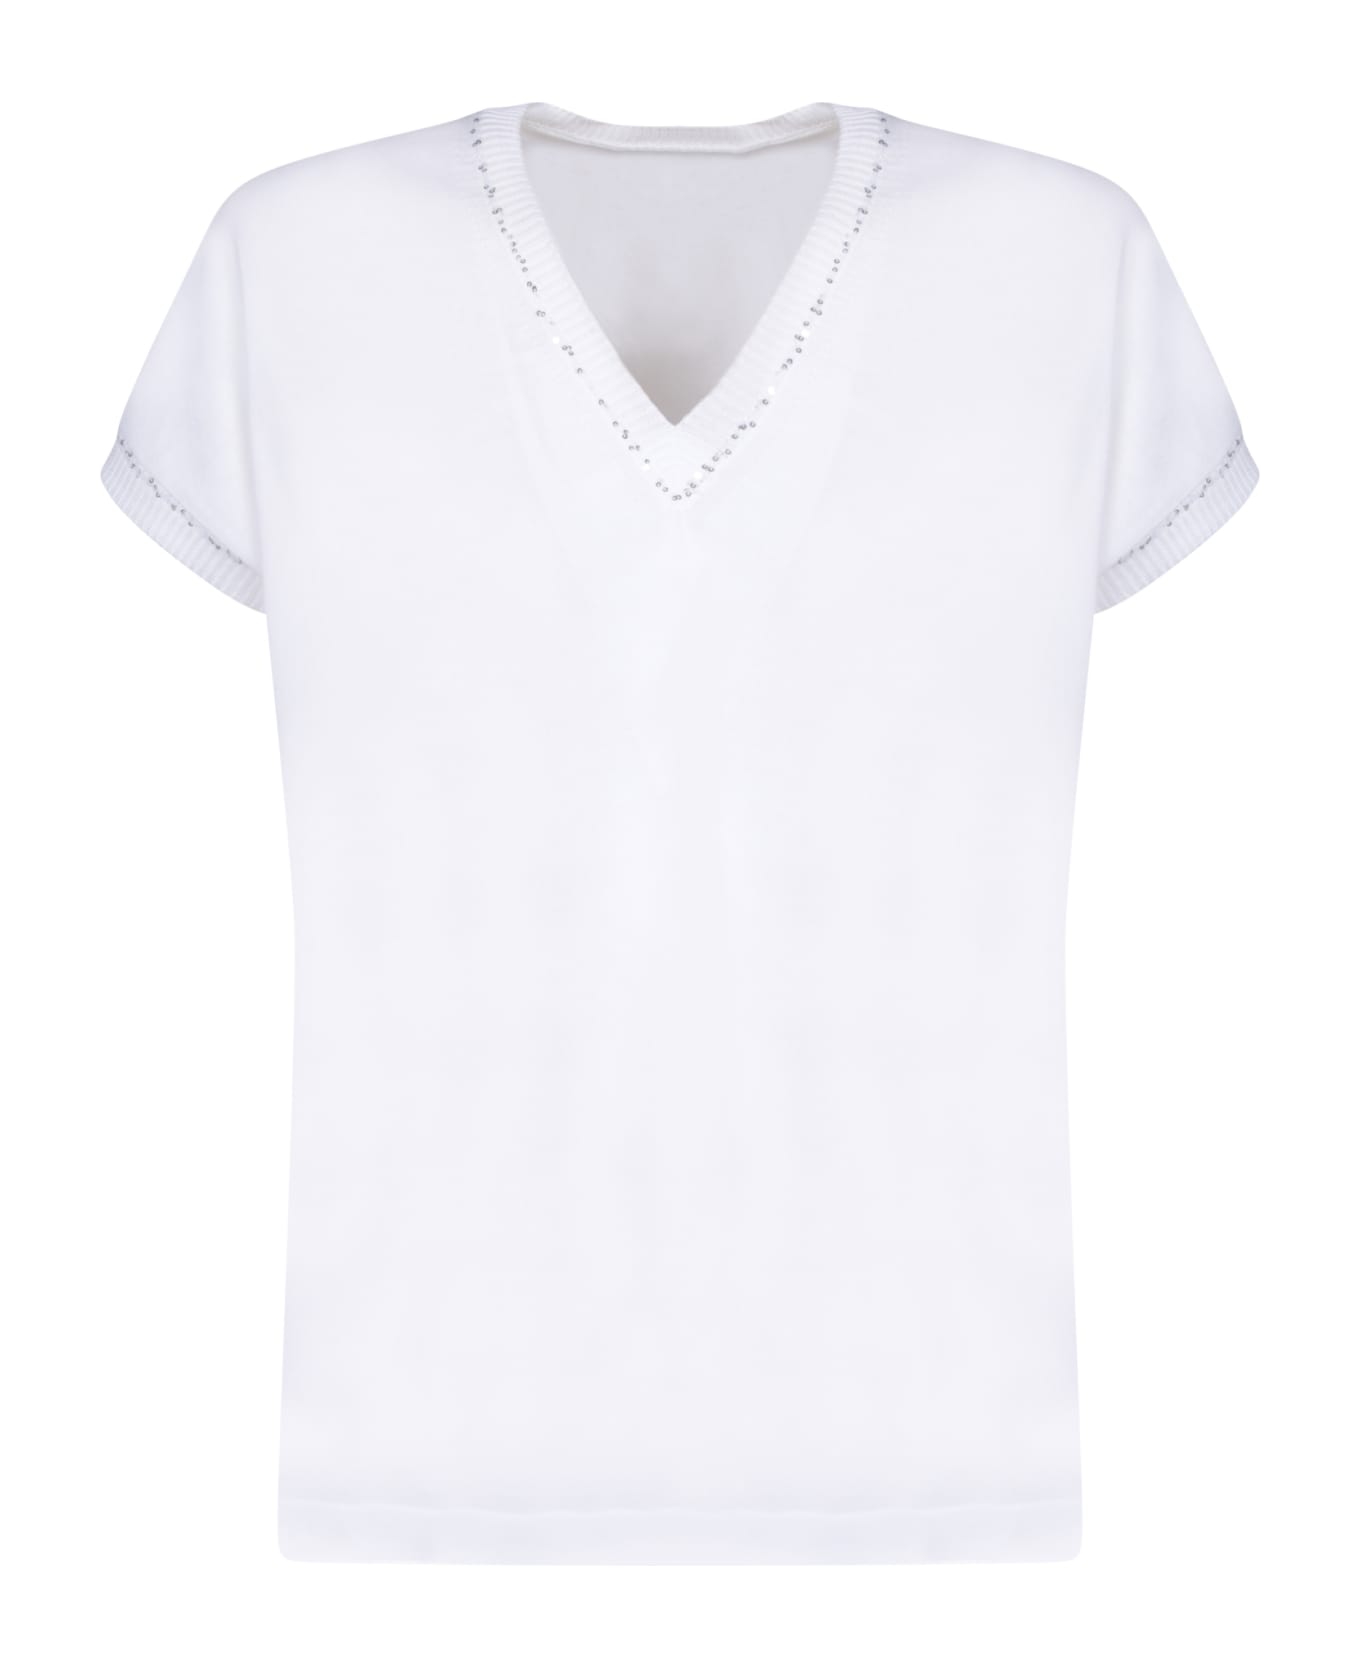 Fabiana Filippi White Sweater - White Tシャツ